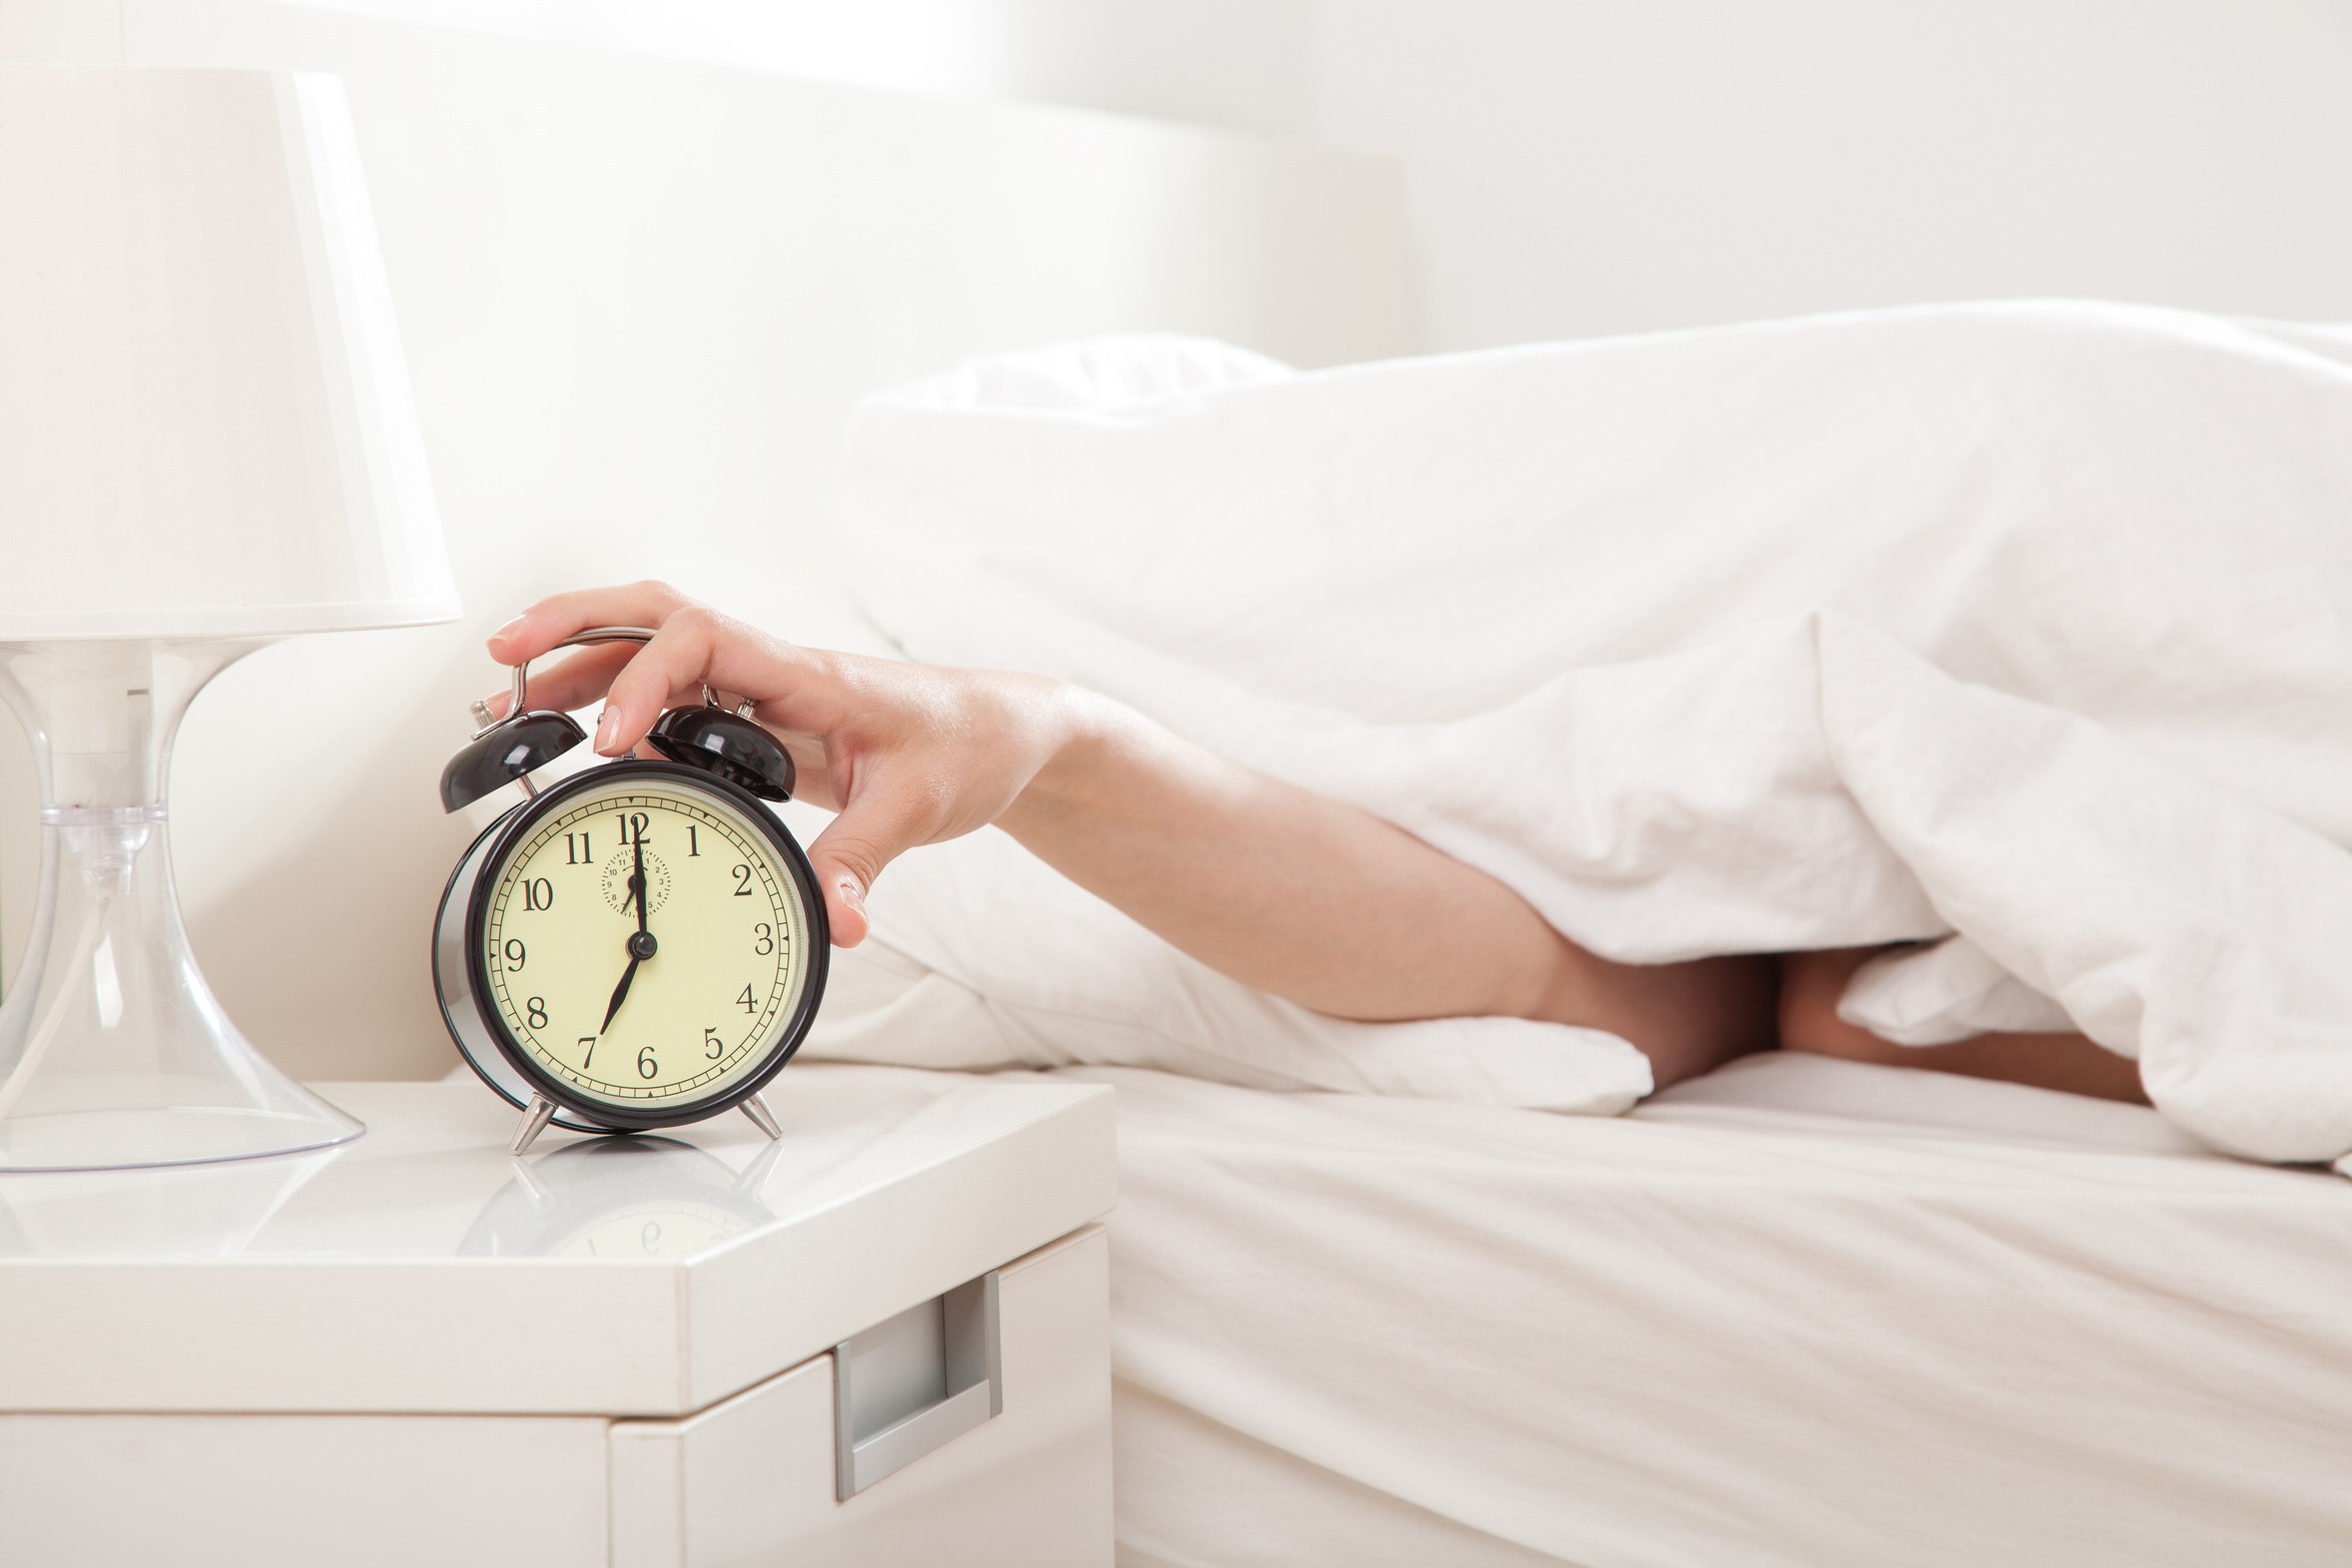 Dormir mais alguns minutinhos ou se levantar? (Foto: Reprodução)